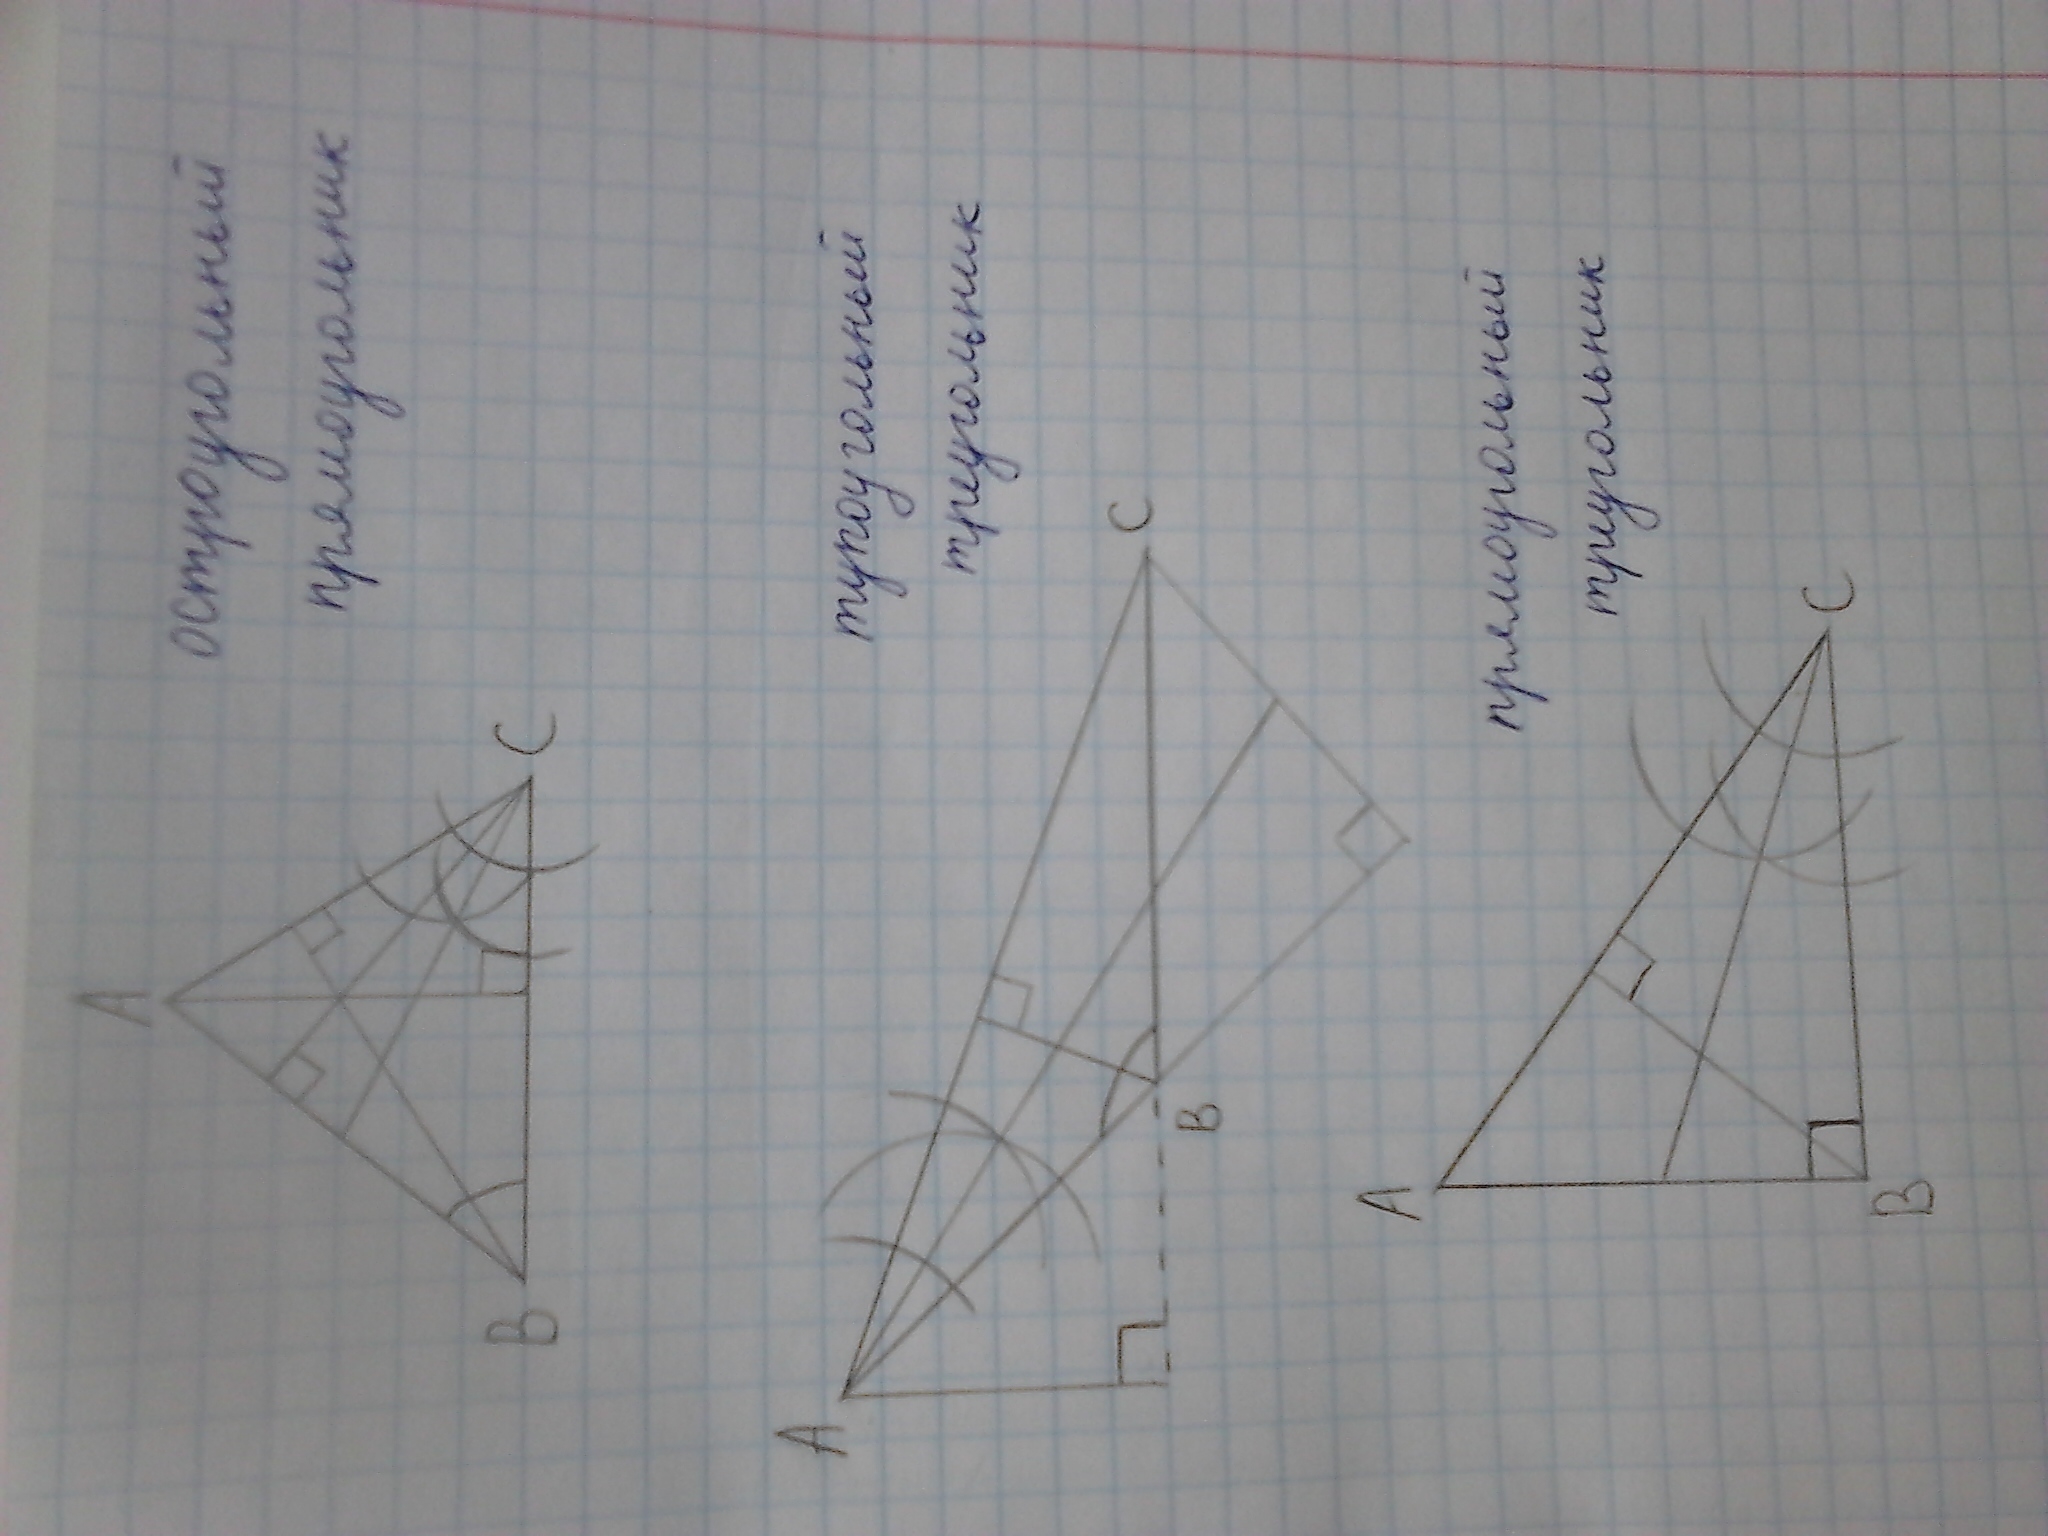 Тупоугольный треугольник изображен на рисунке. Тупоугольный треугольник рисунок. Тупоугольный треугольник на клетчатой бумаге. Тупоугольный треугольник на клетке. Построить образ тупоугольного треугольника